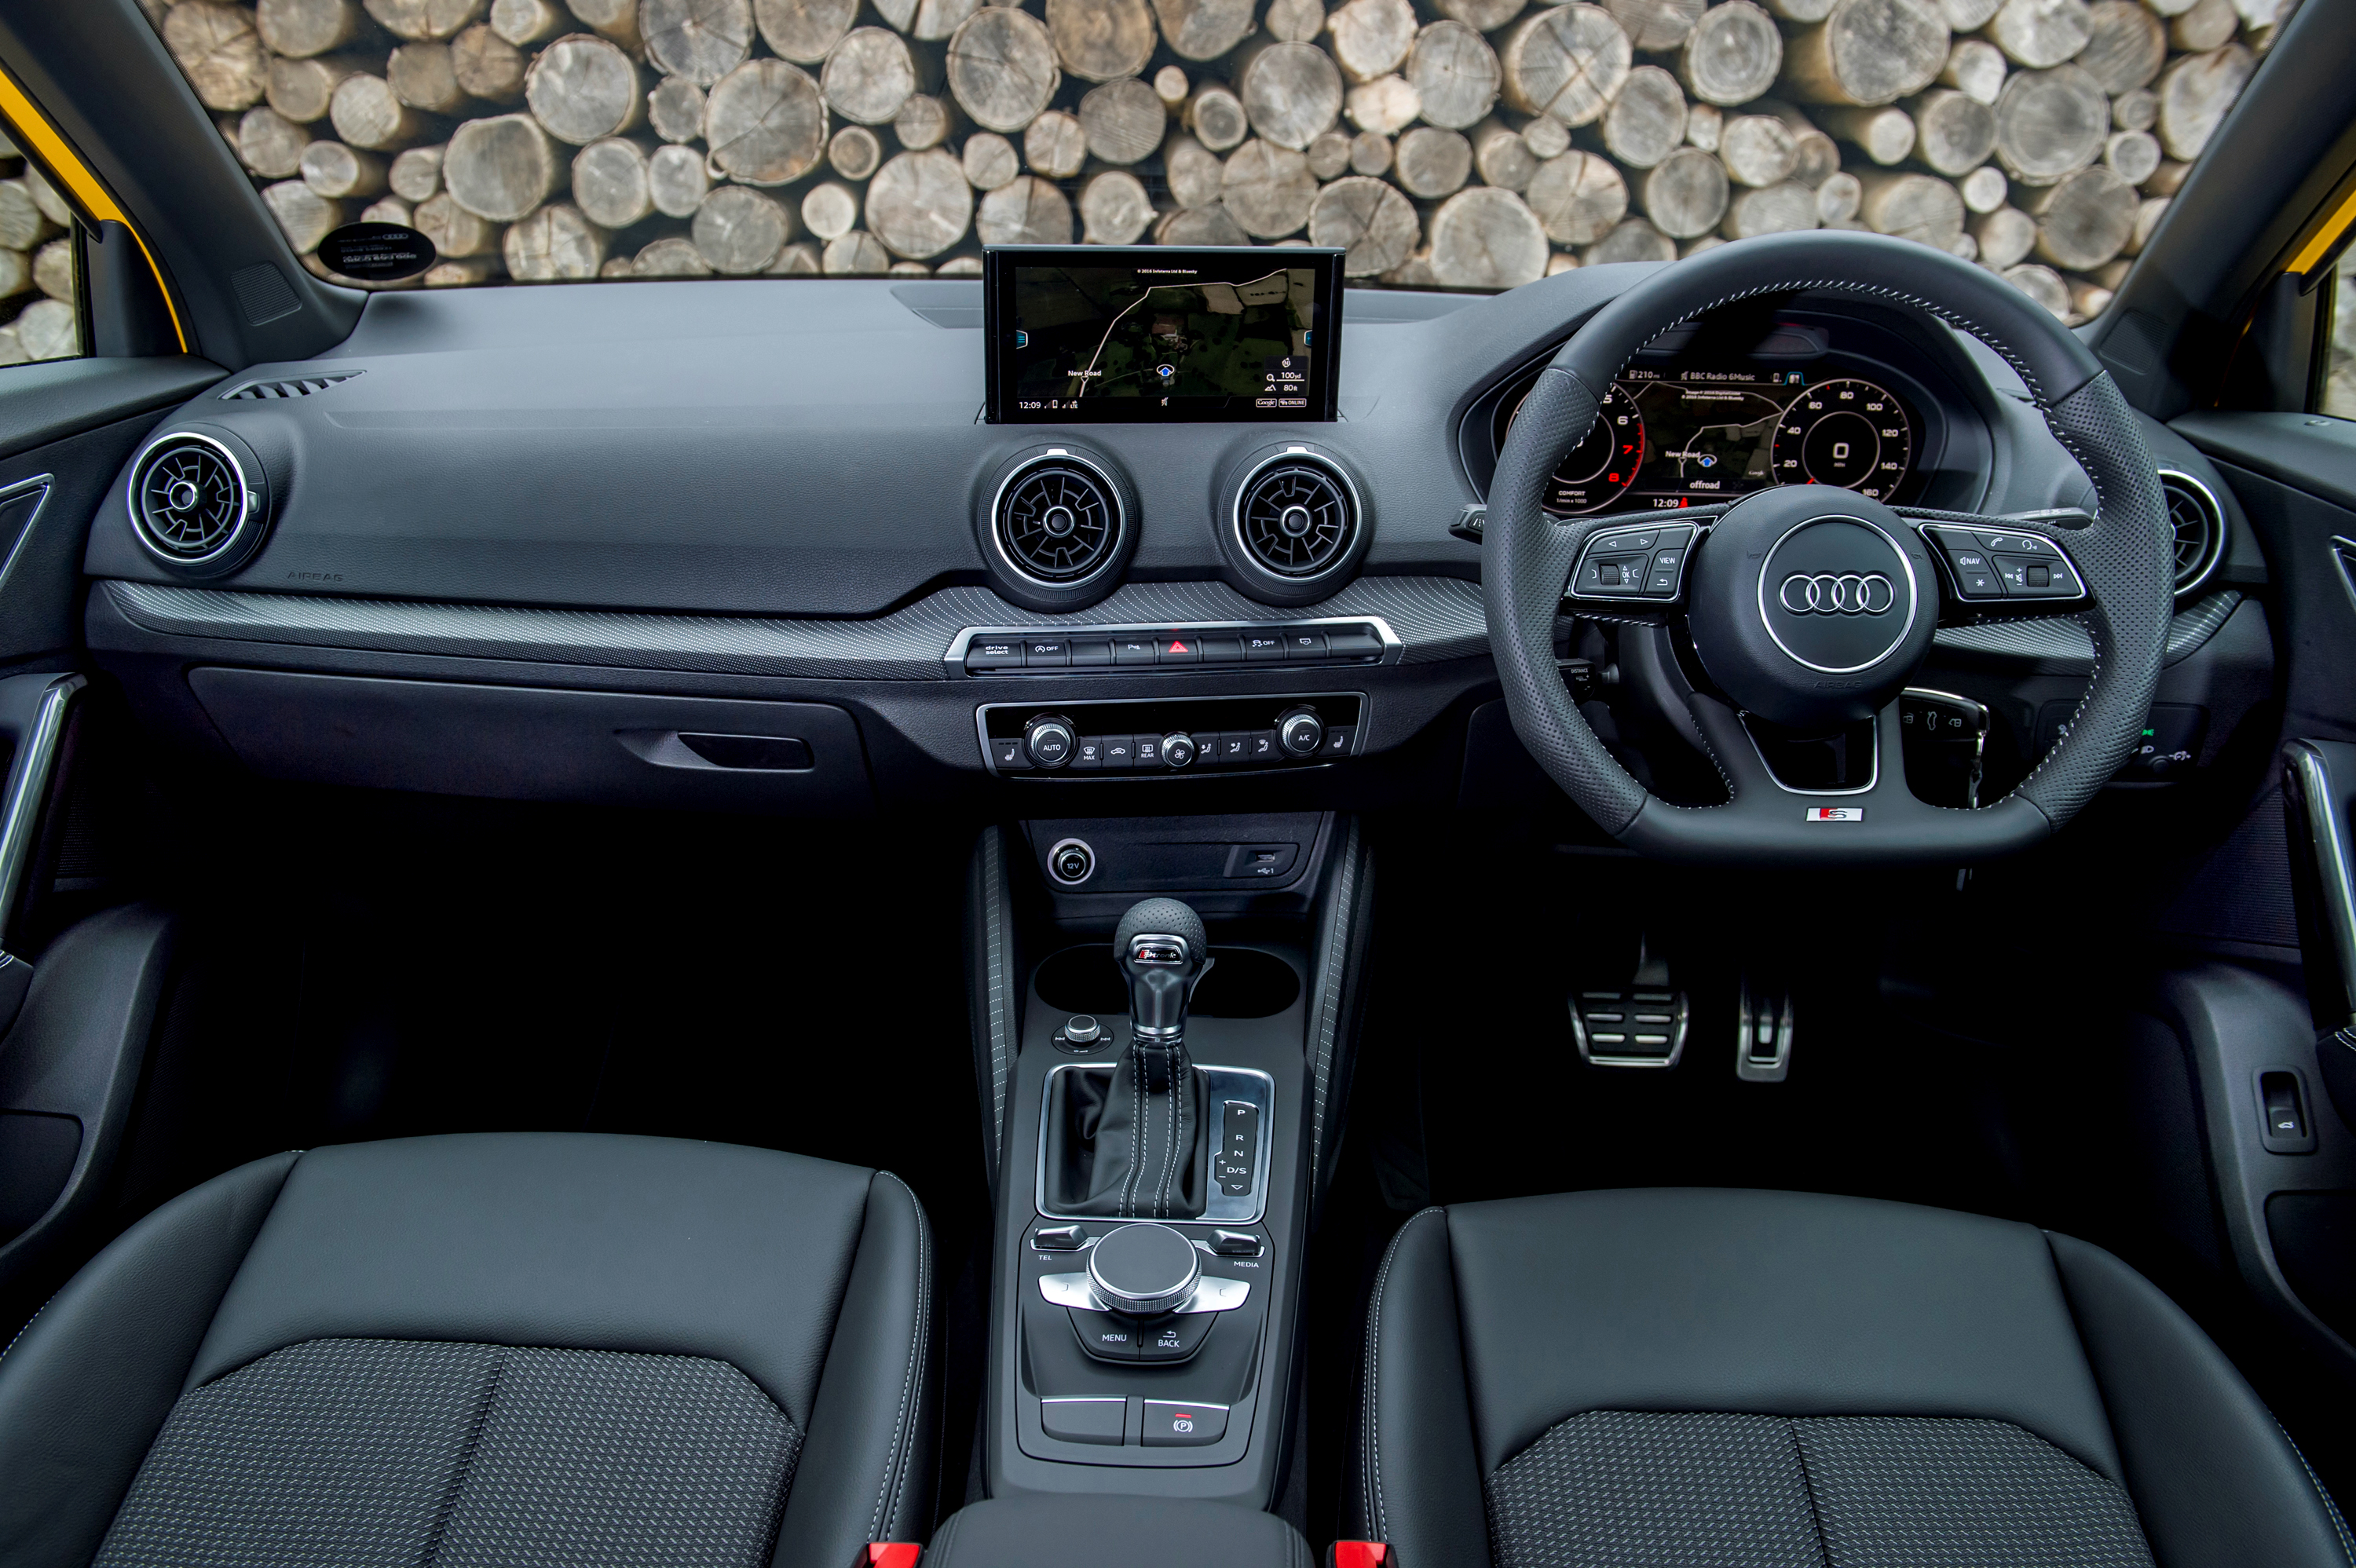 Audi Q2 Review image 2.jpg (3.55 MB)